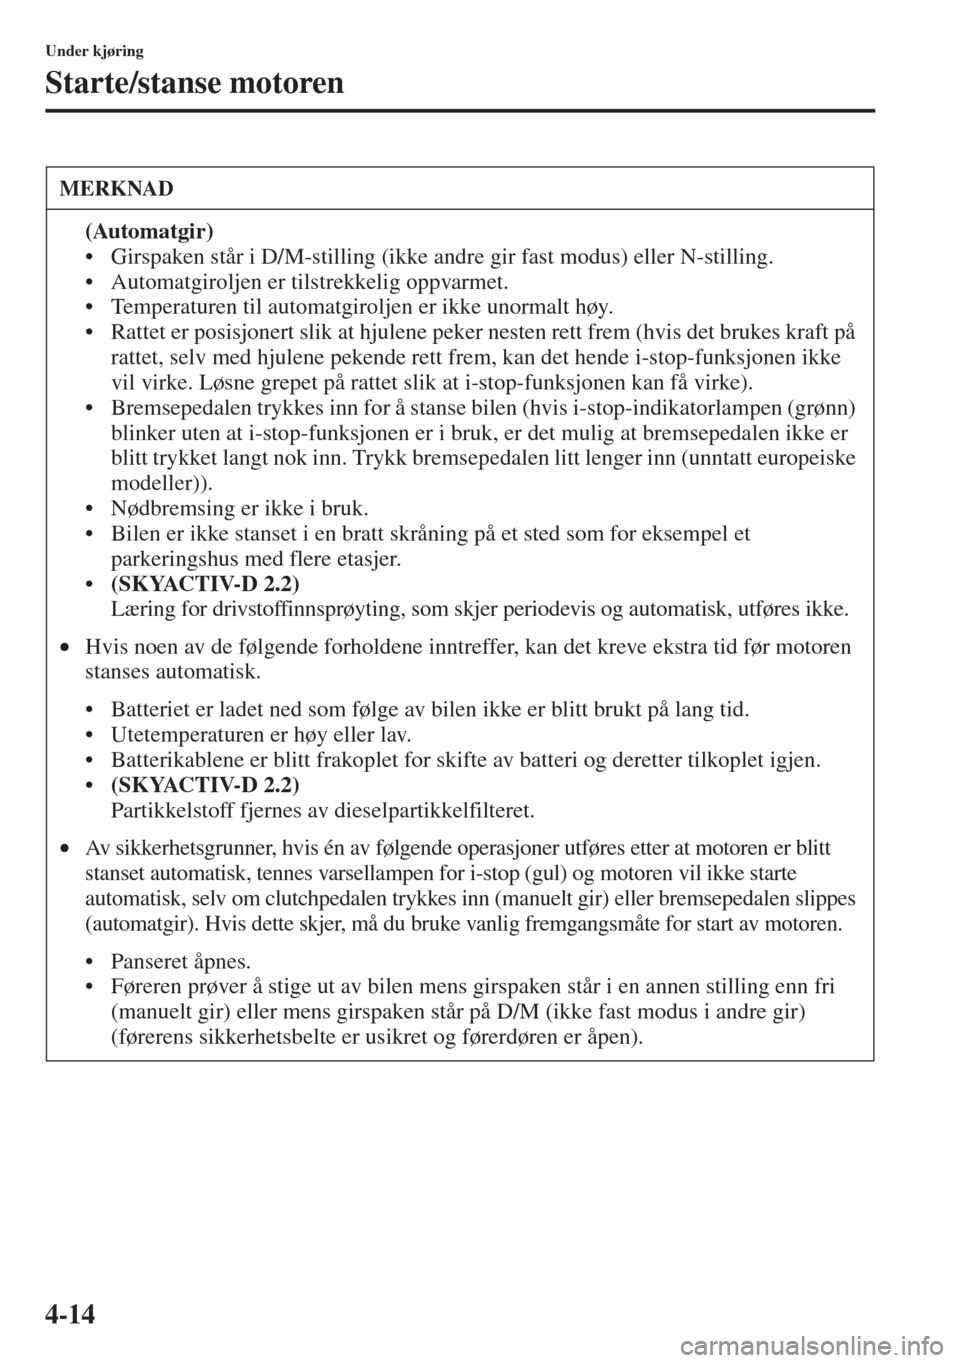 MAZDA MODEL CX-5 2013  Brukerhåndbok (in Norwegian) 4-14
Under kjøring
Starte/stanse motoren
MERKNAD
(Automatgir)
• Girspaken står i D/M-stilling (ikke andre gir fast modus) eller N-stilling.
• Automatgiroljen er tilstrekkelig oppvarmet.
• Temp